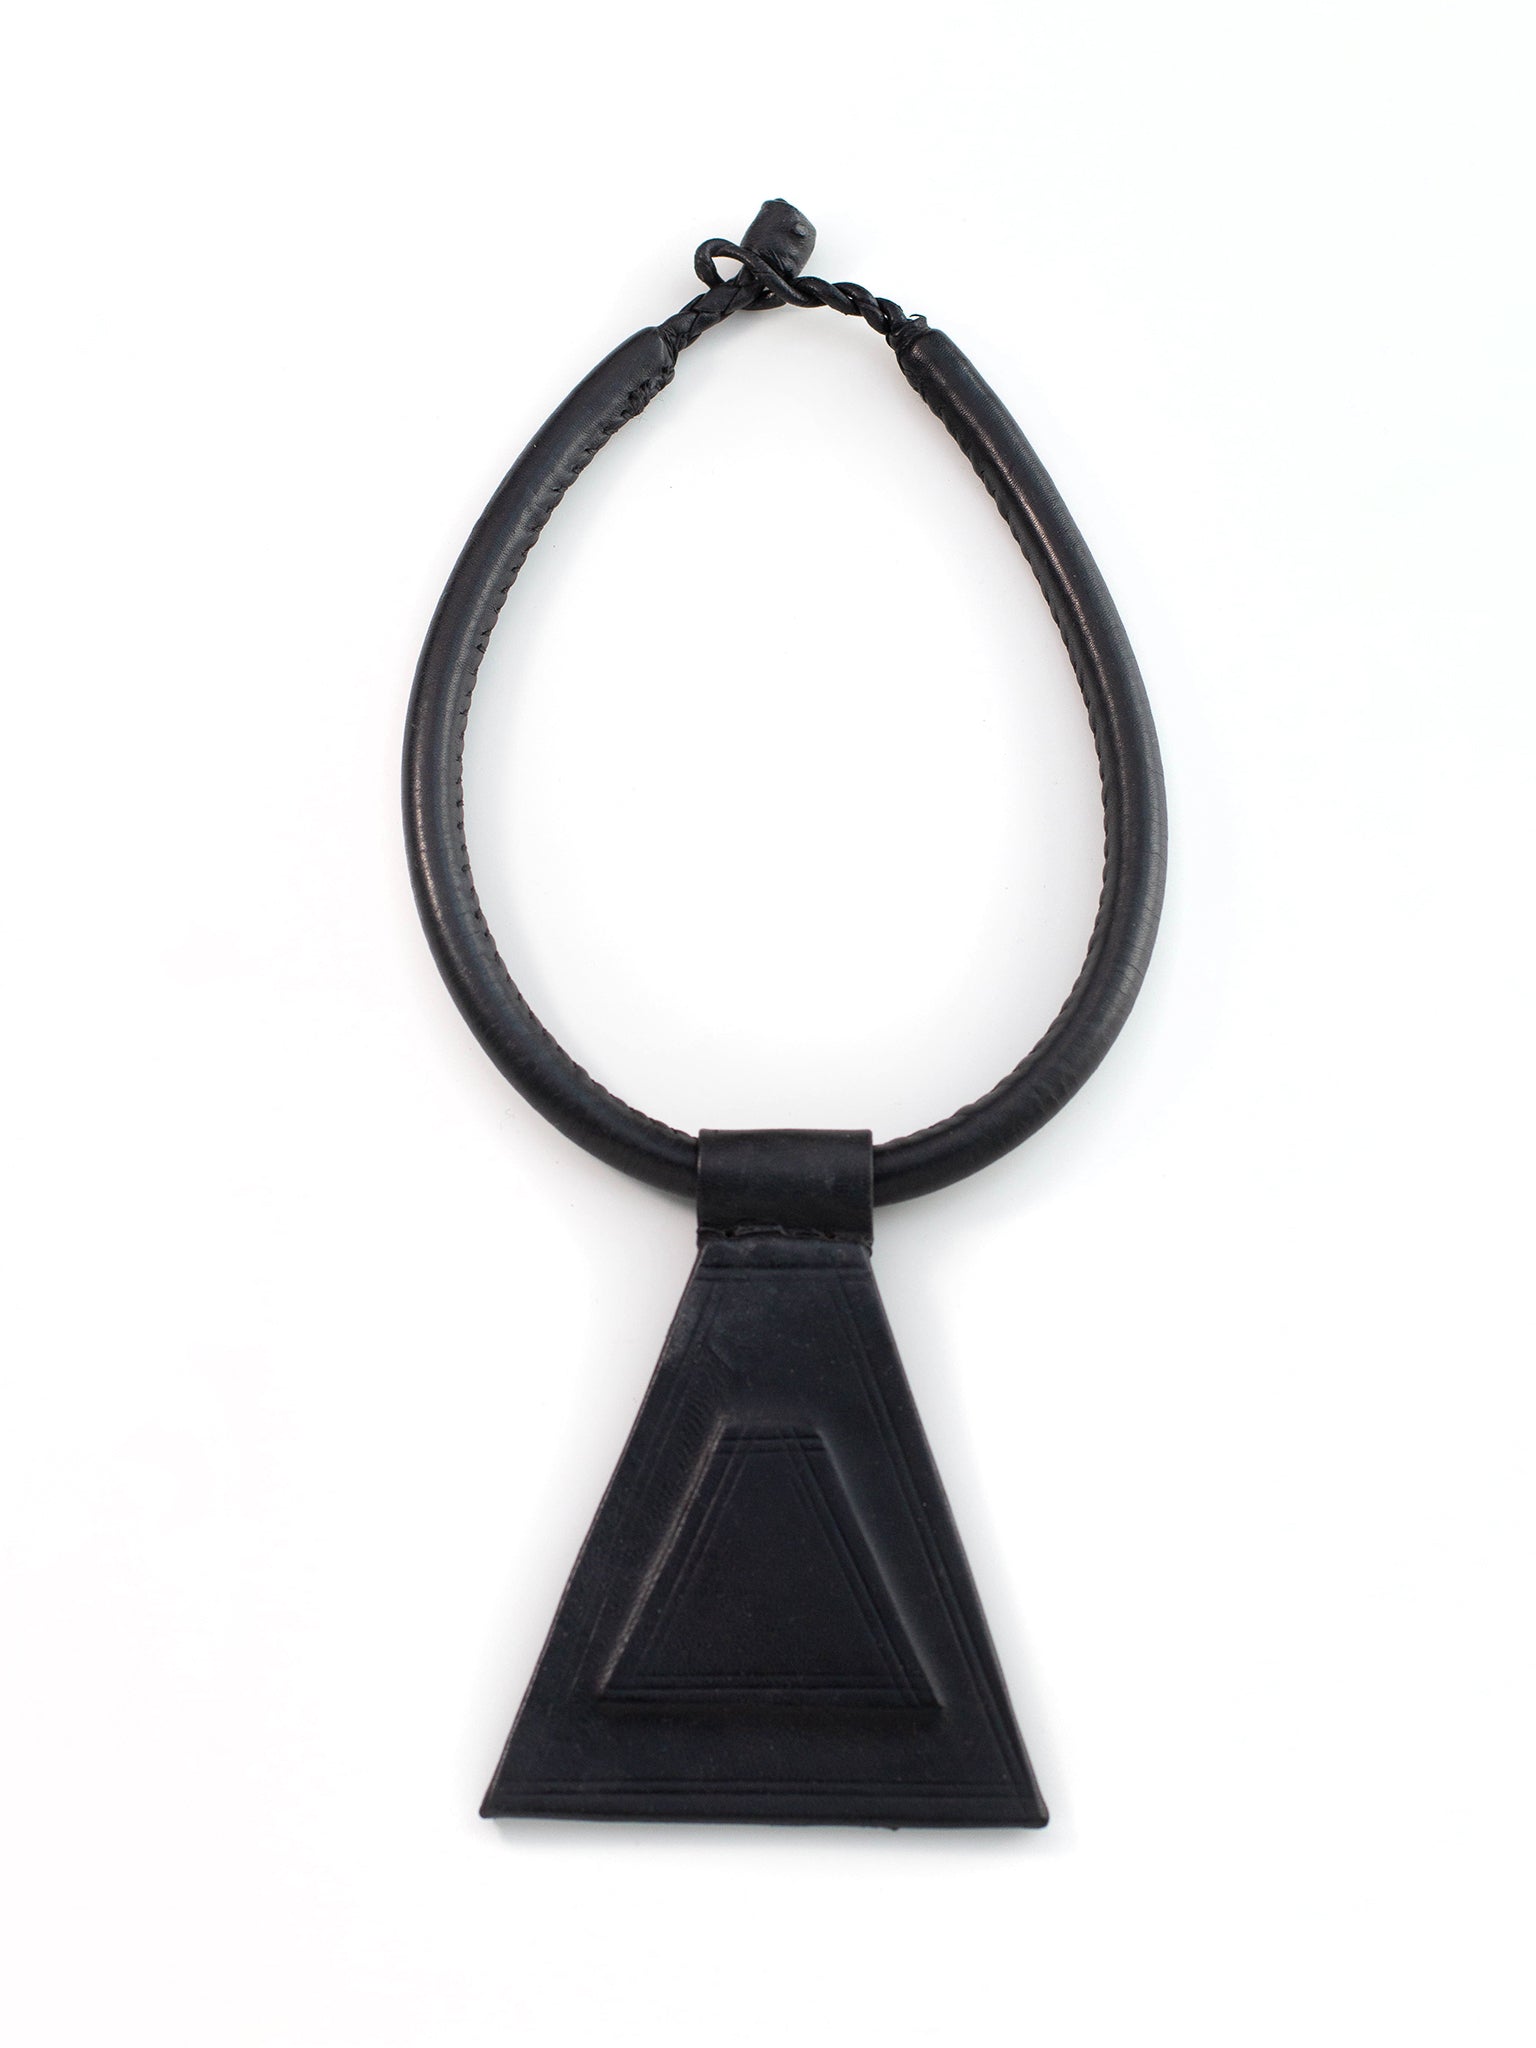 Noir Leather Necklace